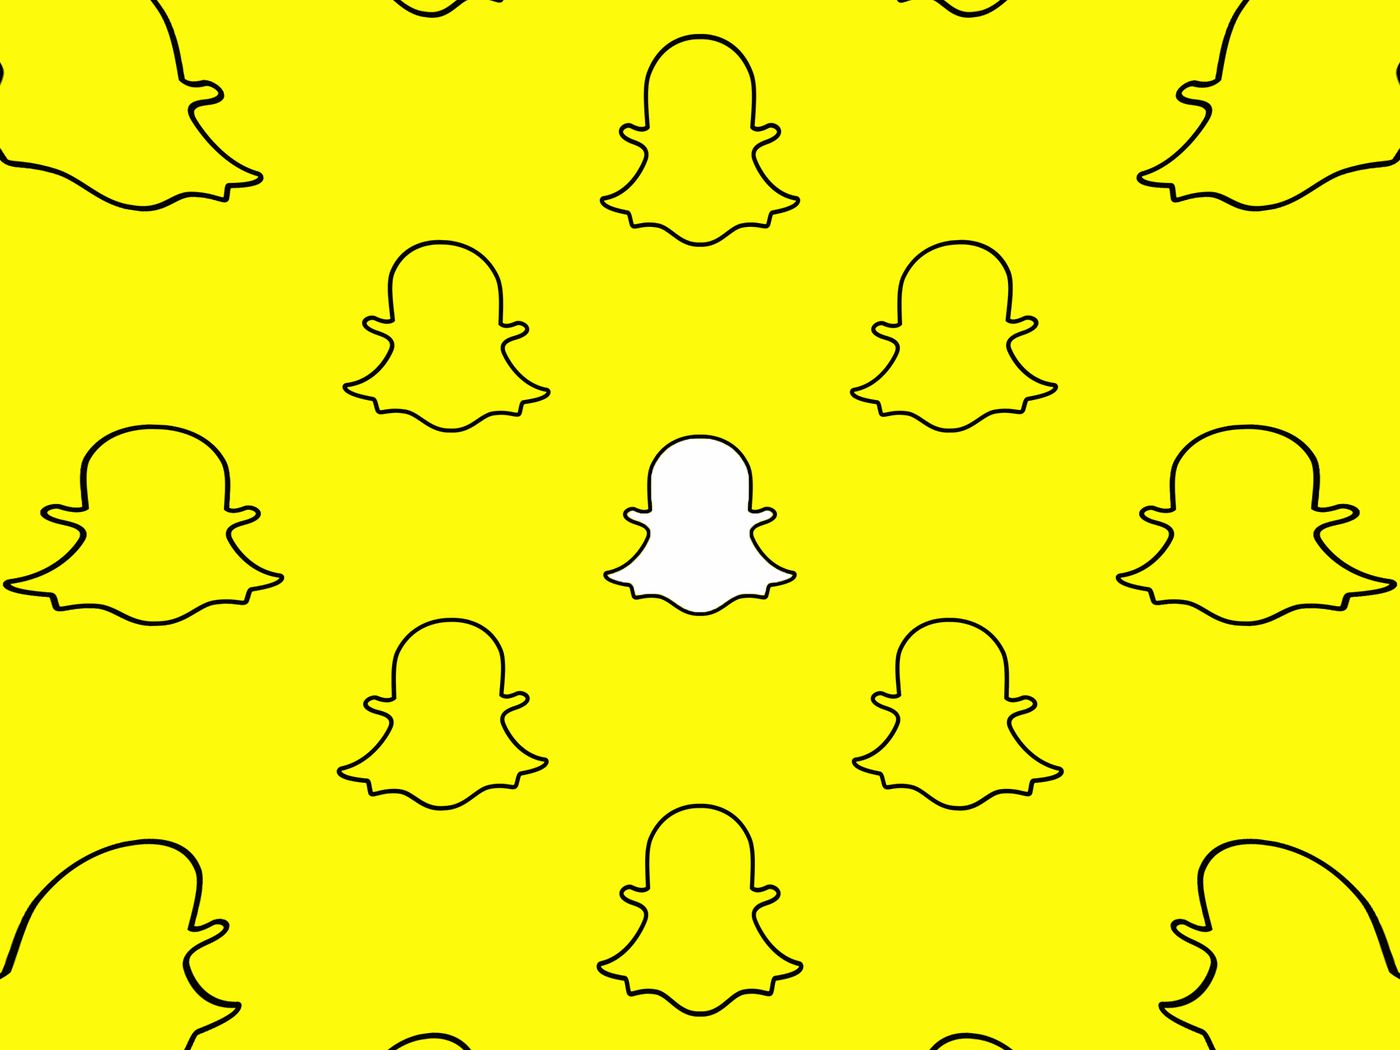 Hogyan számolják a snapchat pontszámot? - Snapchat - 2021